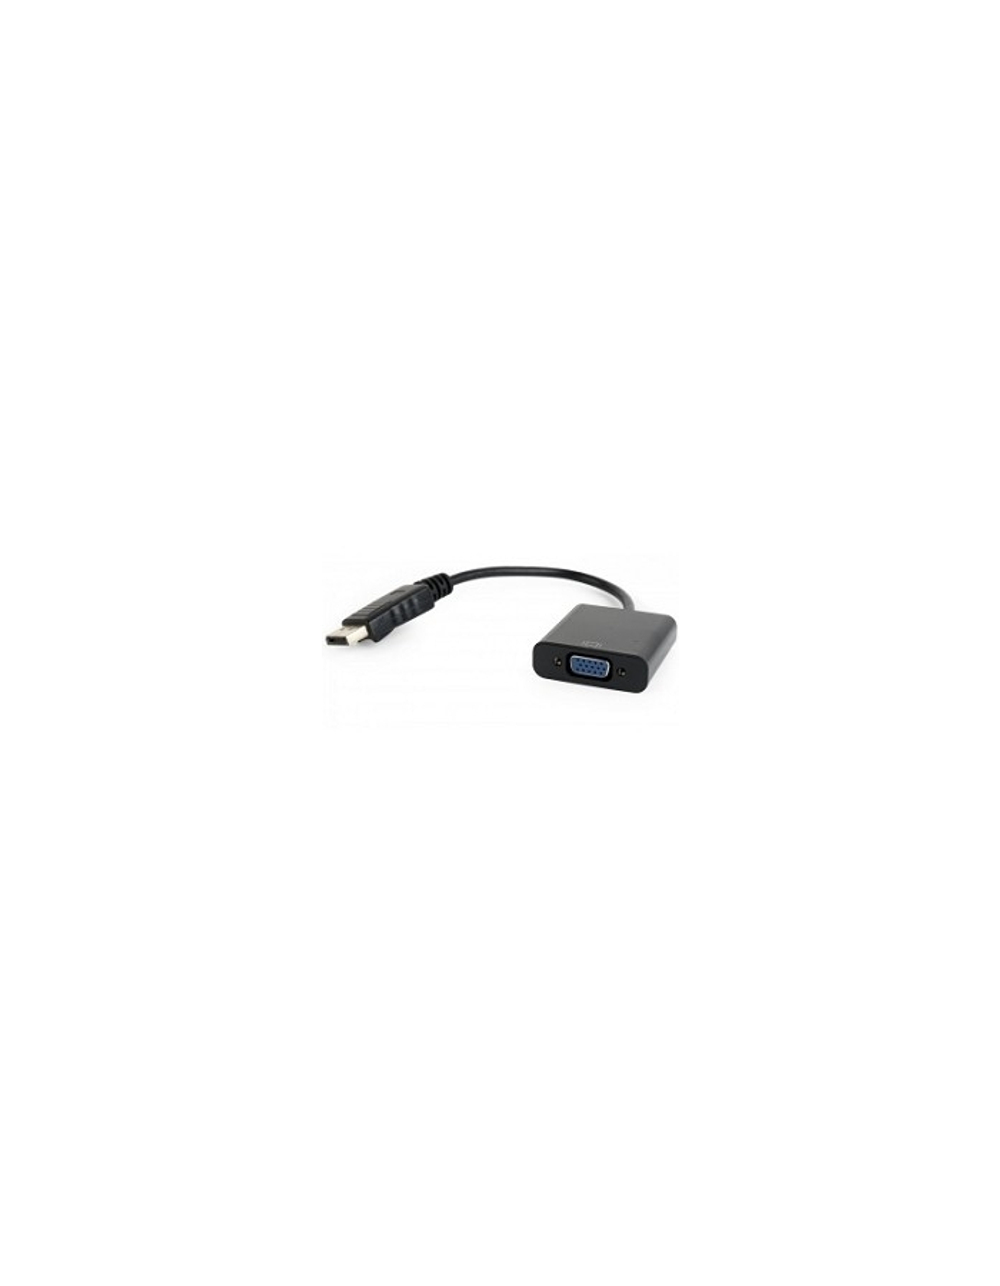 Cablexpert Переходник DisplayPort - VGA A-DPM-VGAF-02, 20M/15F, кабель 15см, пакет